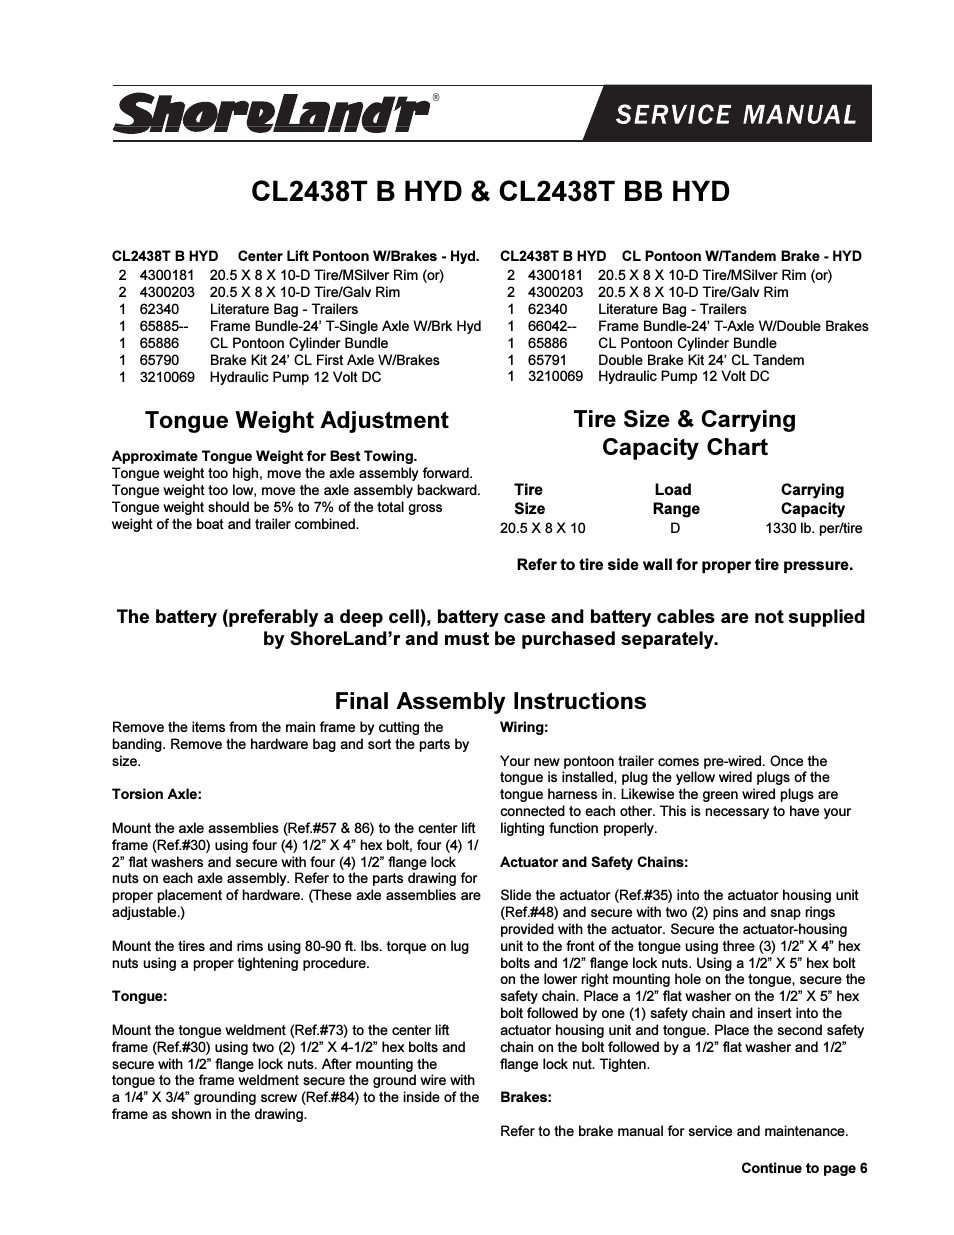 CL2438TB-HYD